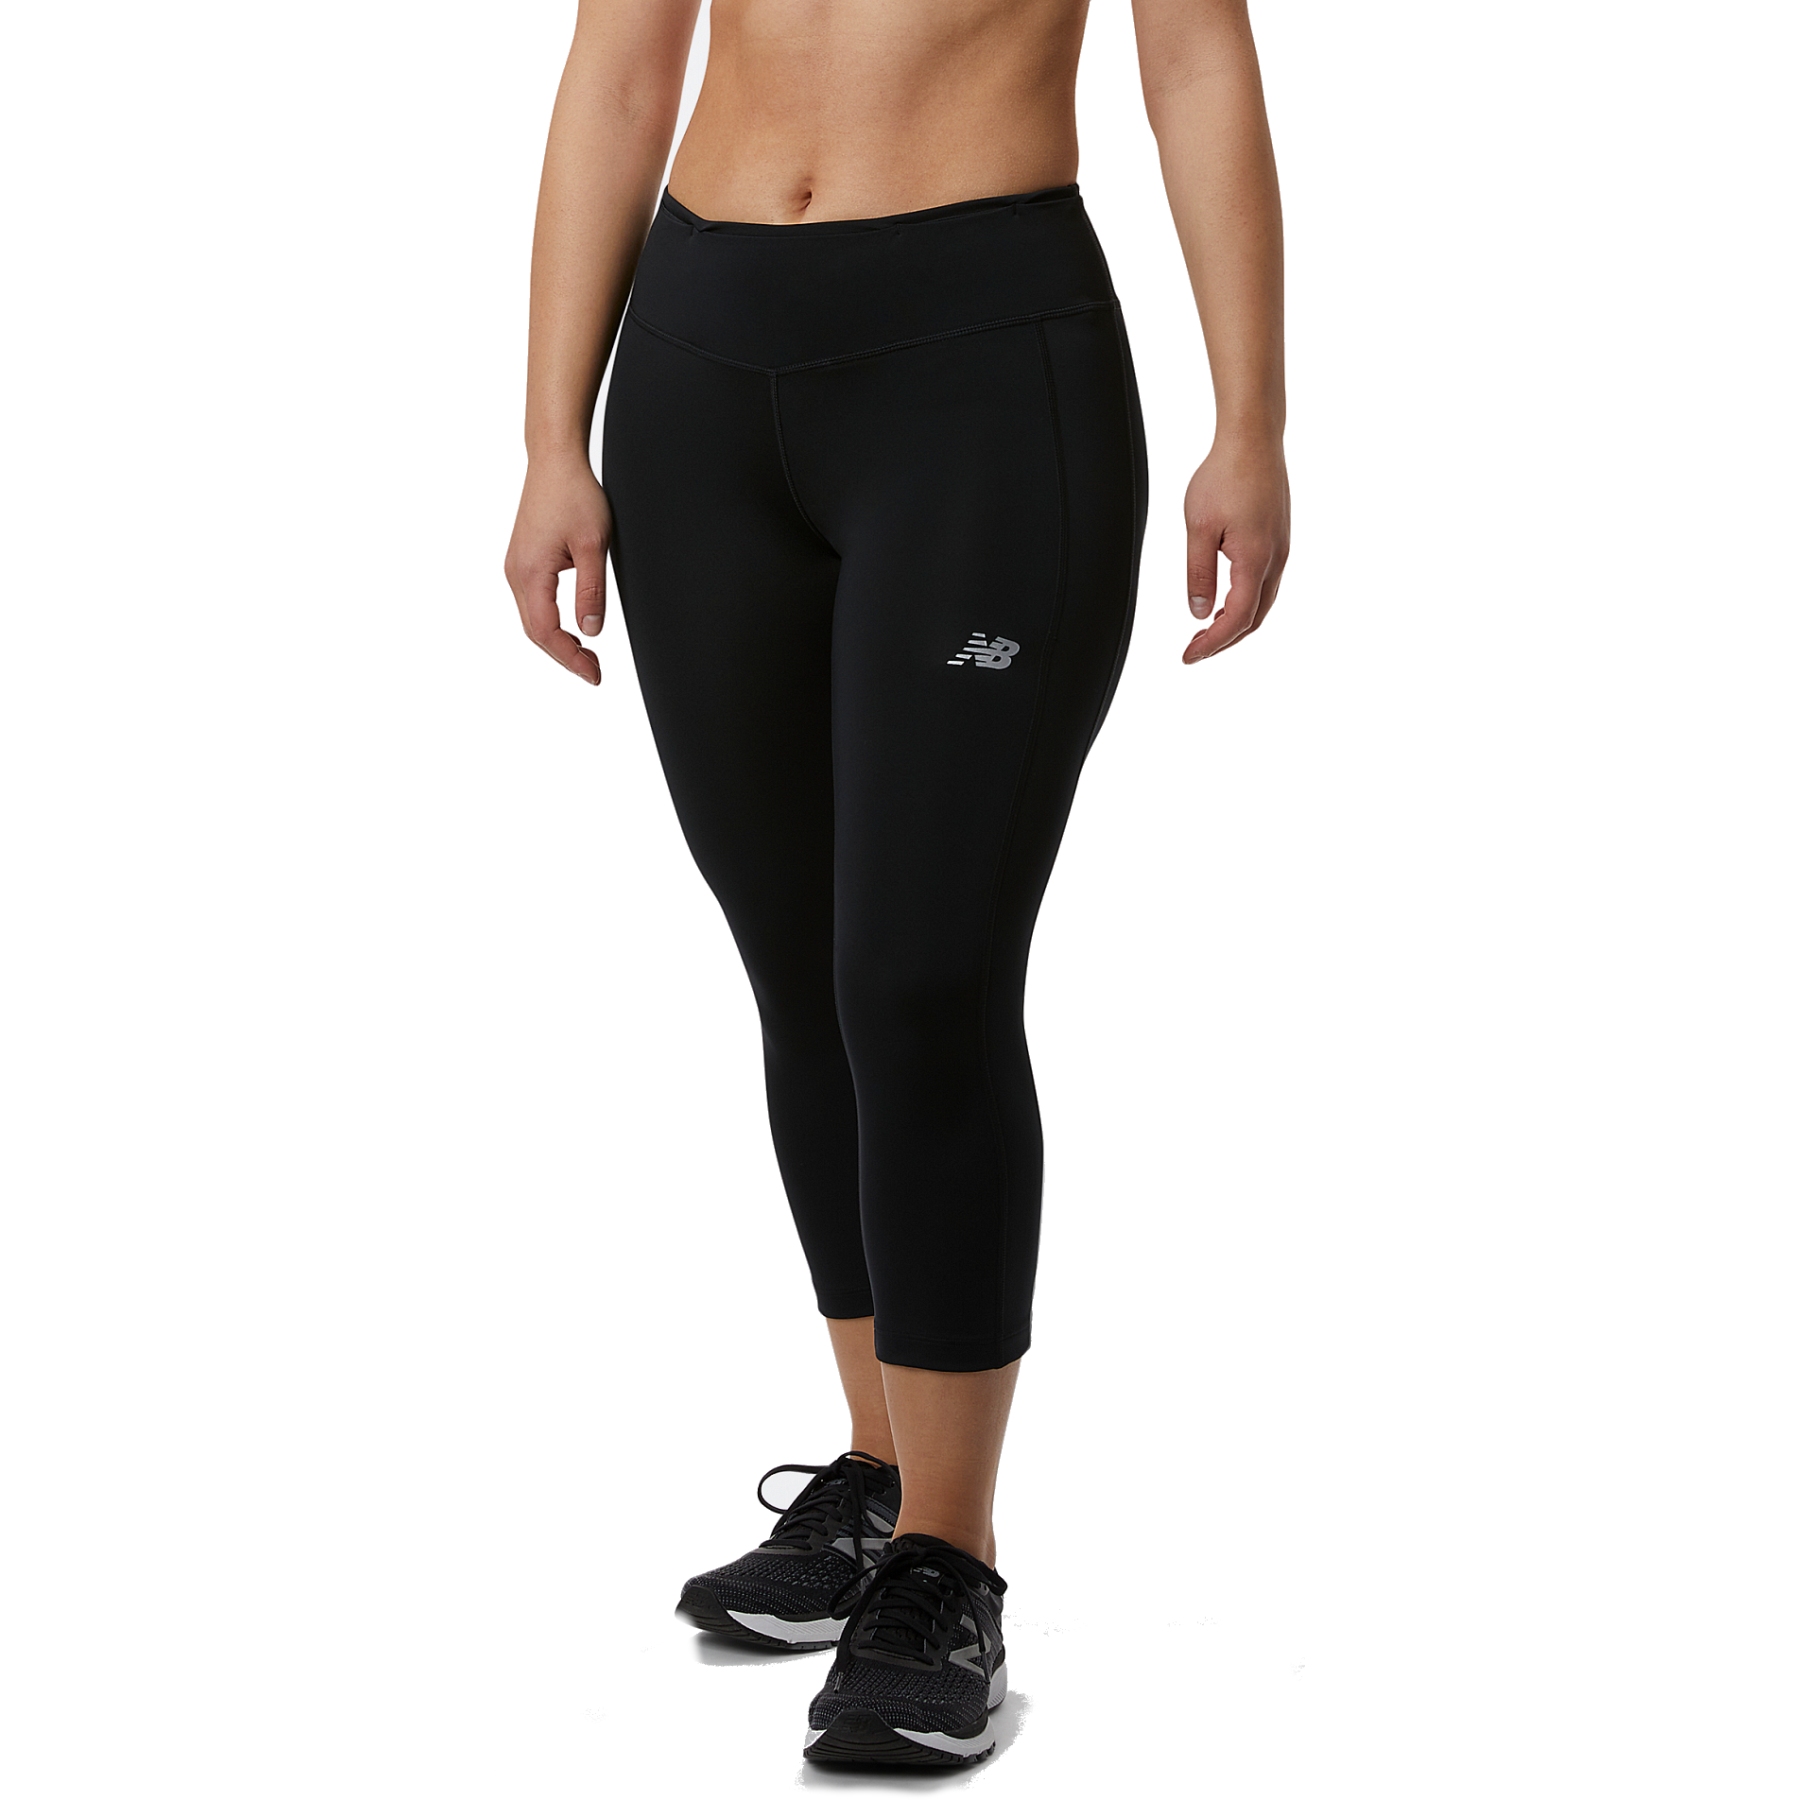 Immagine di New Balance Pantaloni Capri Donna - Accelerate - Nero